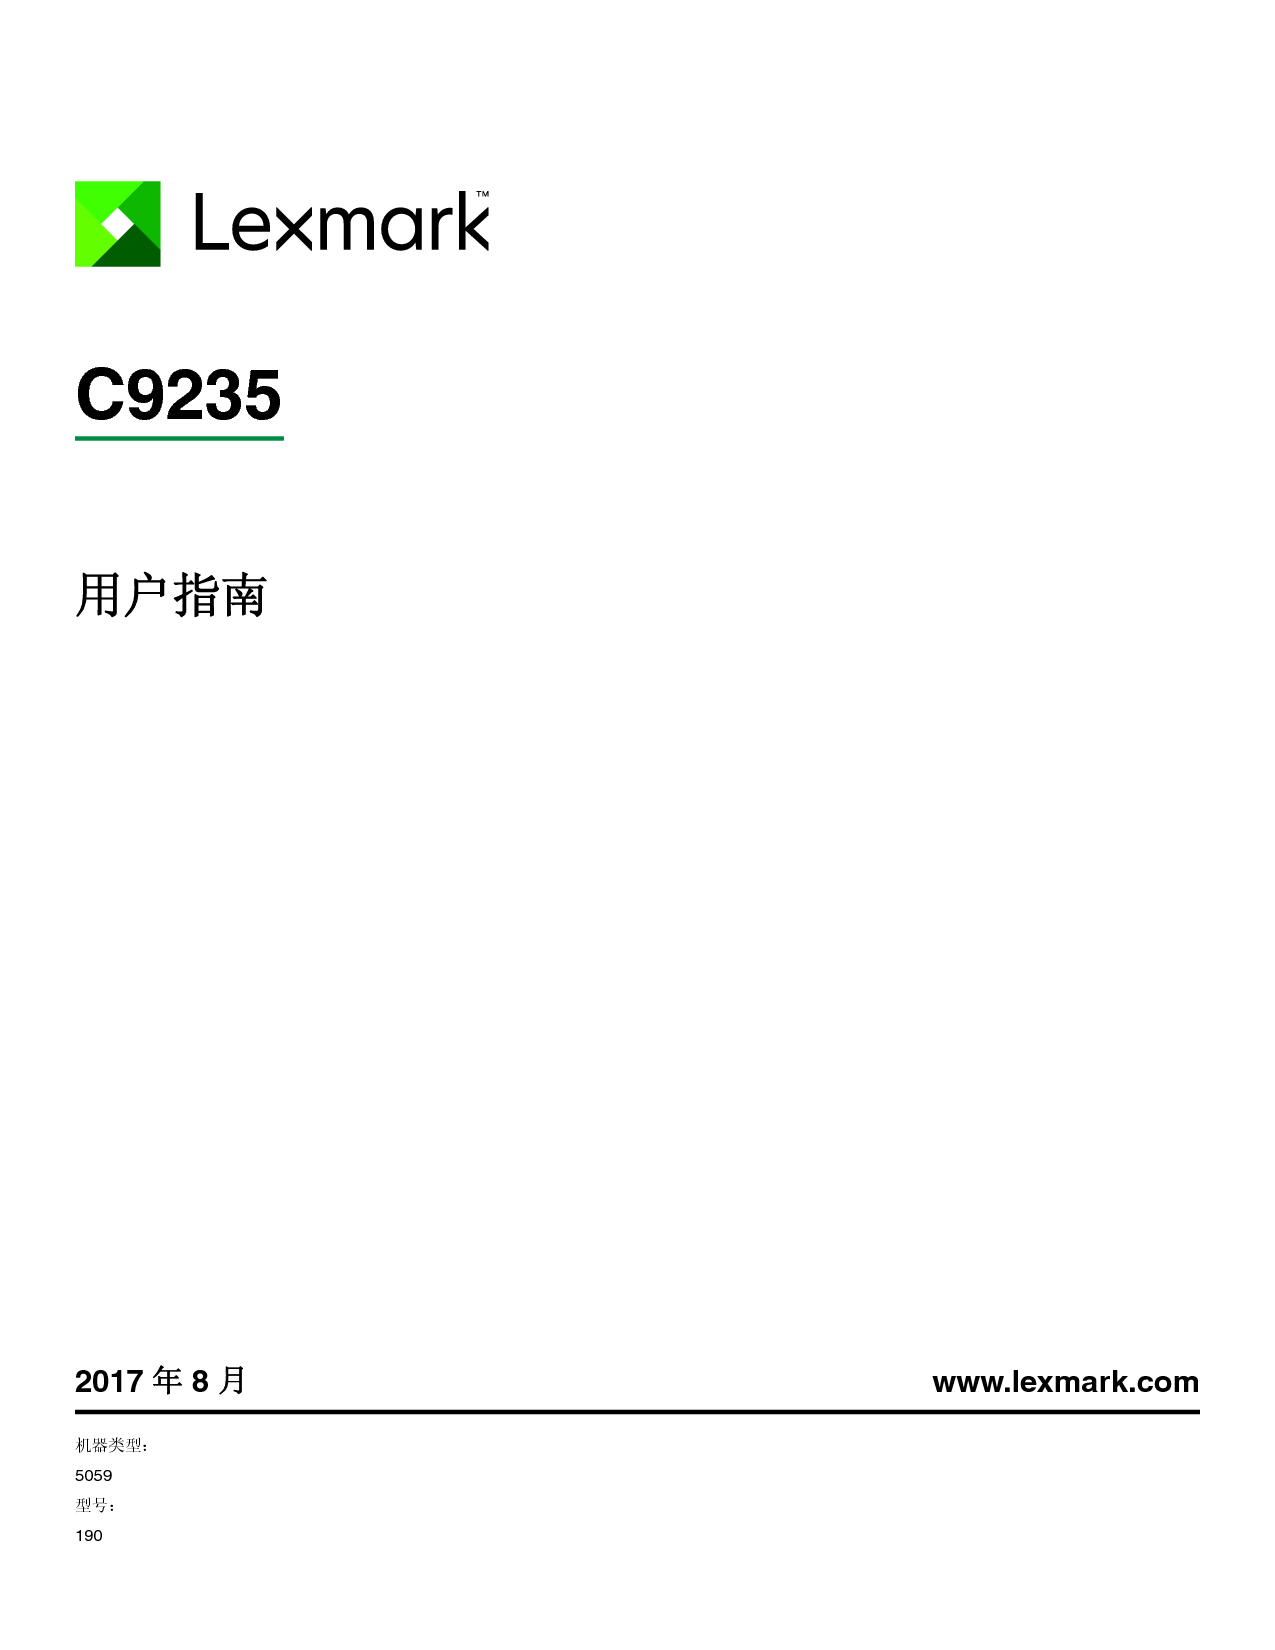 利盟 Lexmark C9235 用户指南 封面